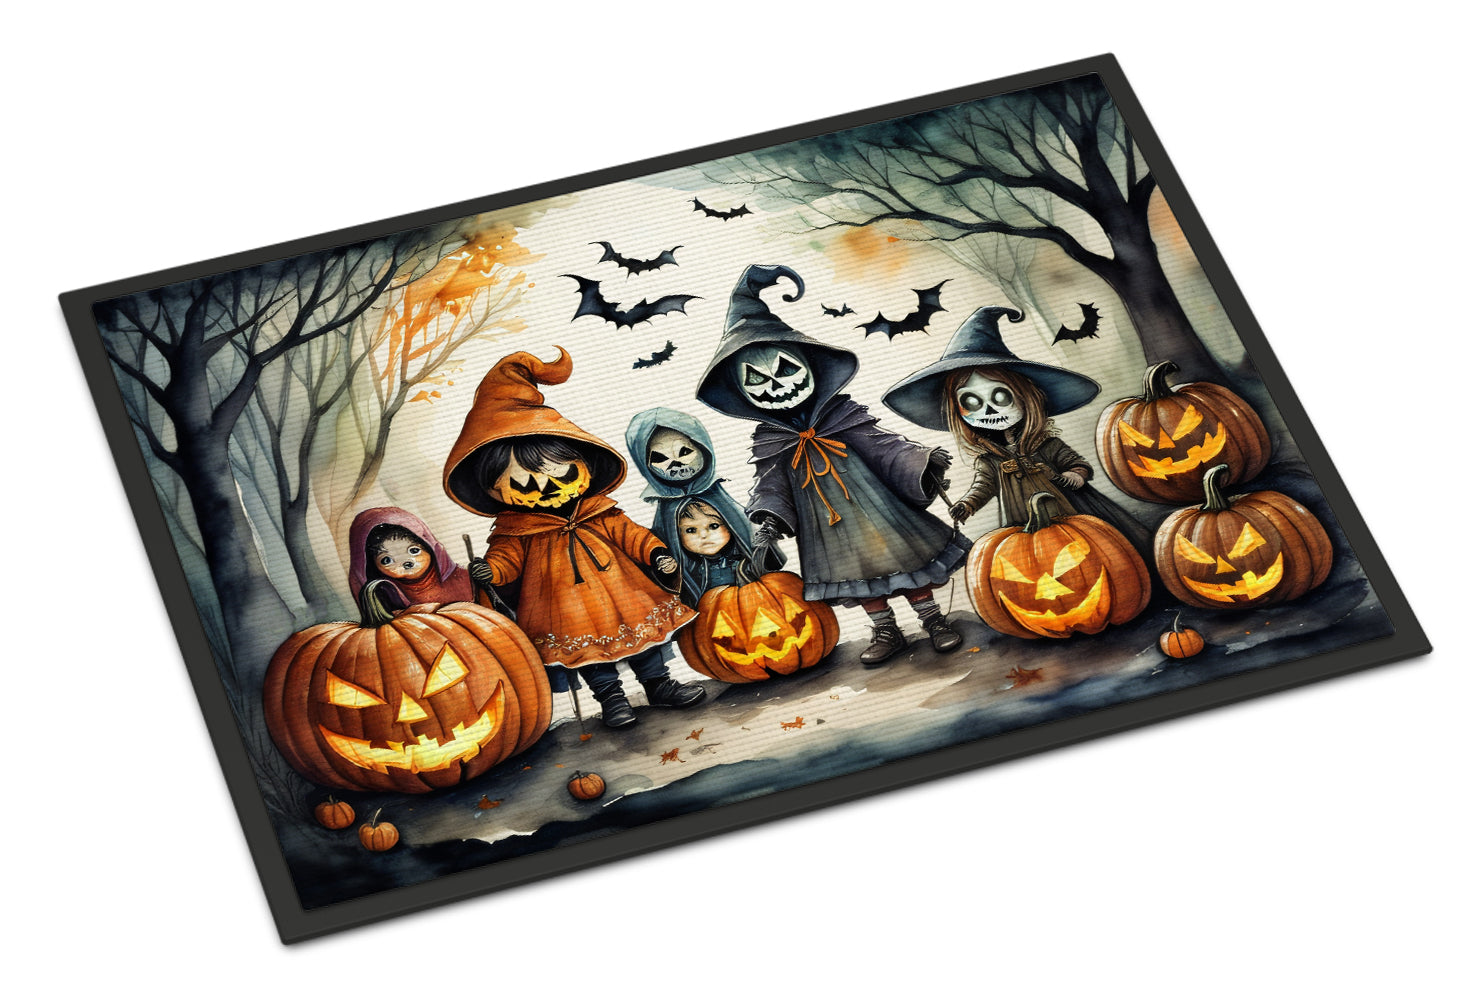 Buy this Trick or Treaters Spooky Halloween Doormat 18x27